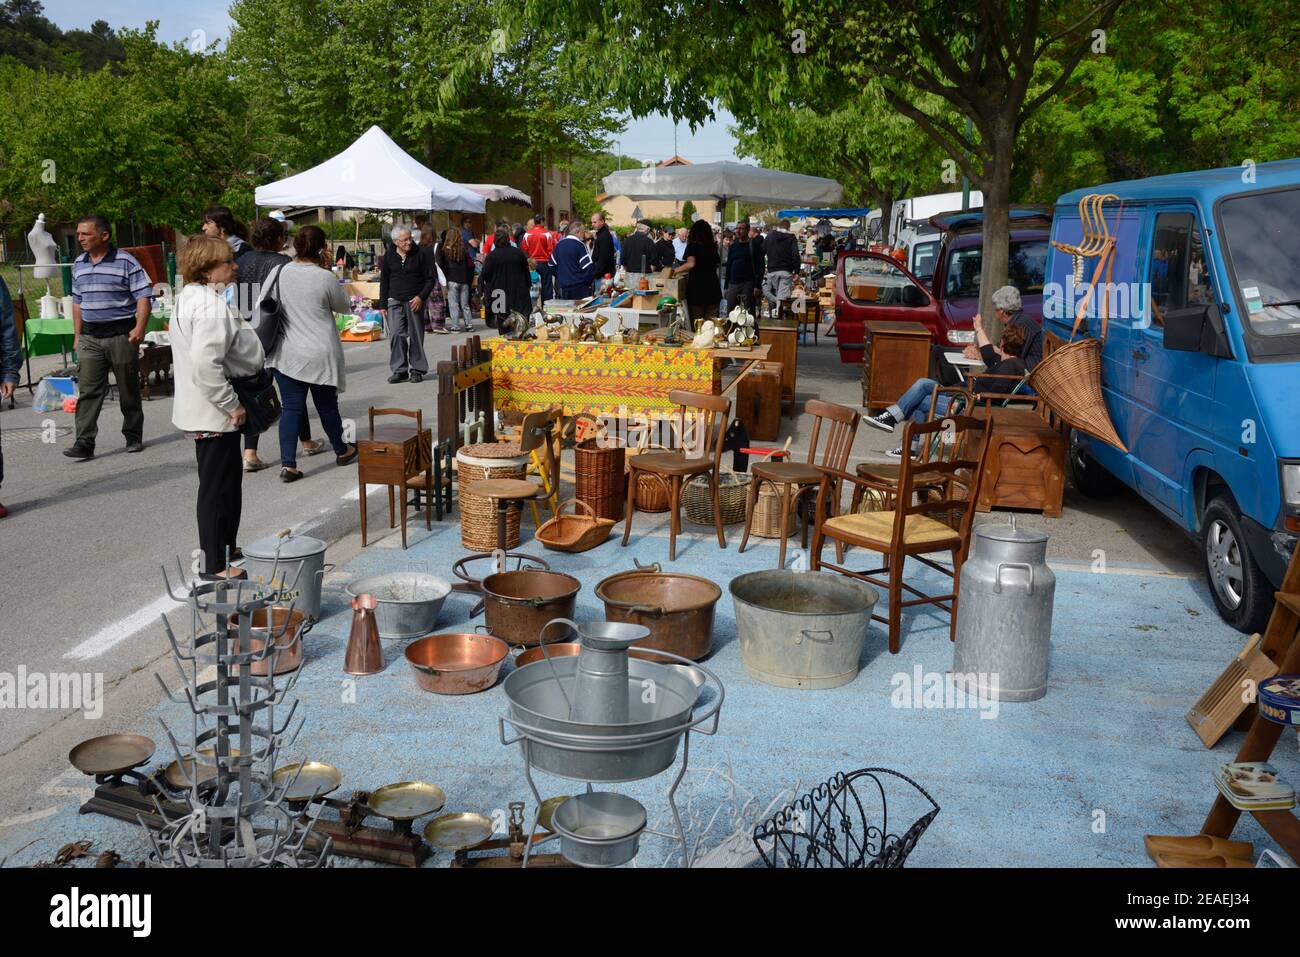 Les touristes et acheteurs peuvent acheter des meubles anciens, des objets de copperware et des objets de collection vintage à Brocante ou des antiquités Markert Jouques Provence France Banque D'Images